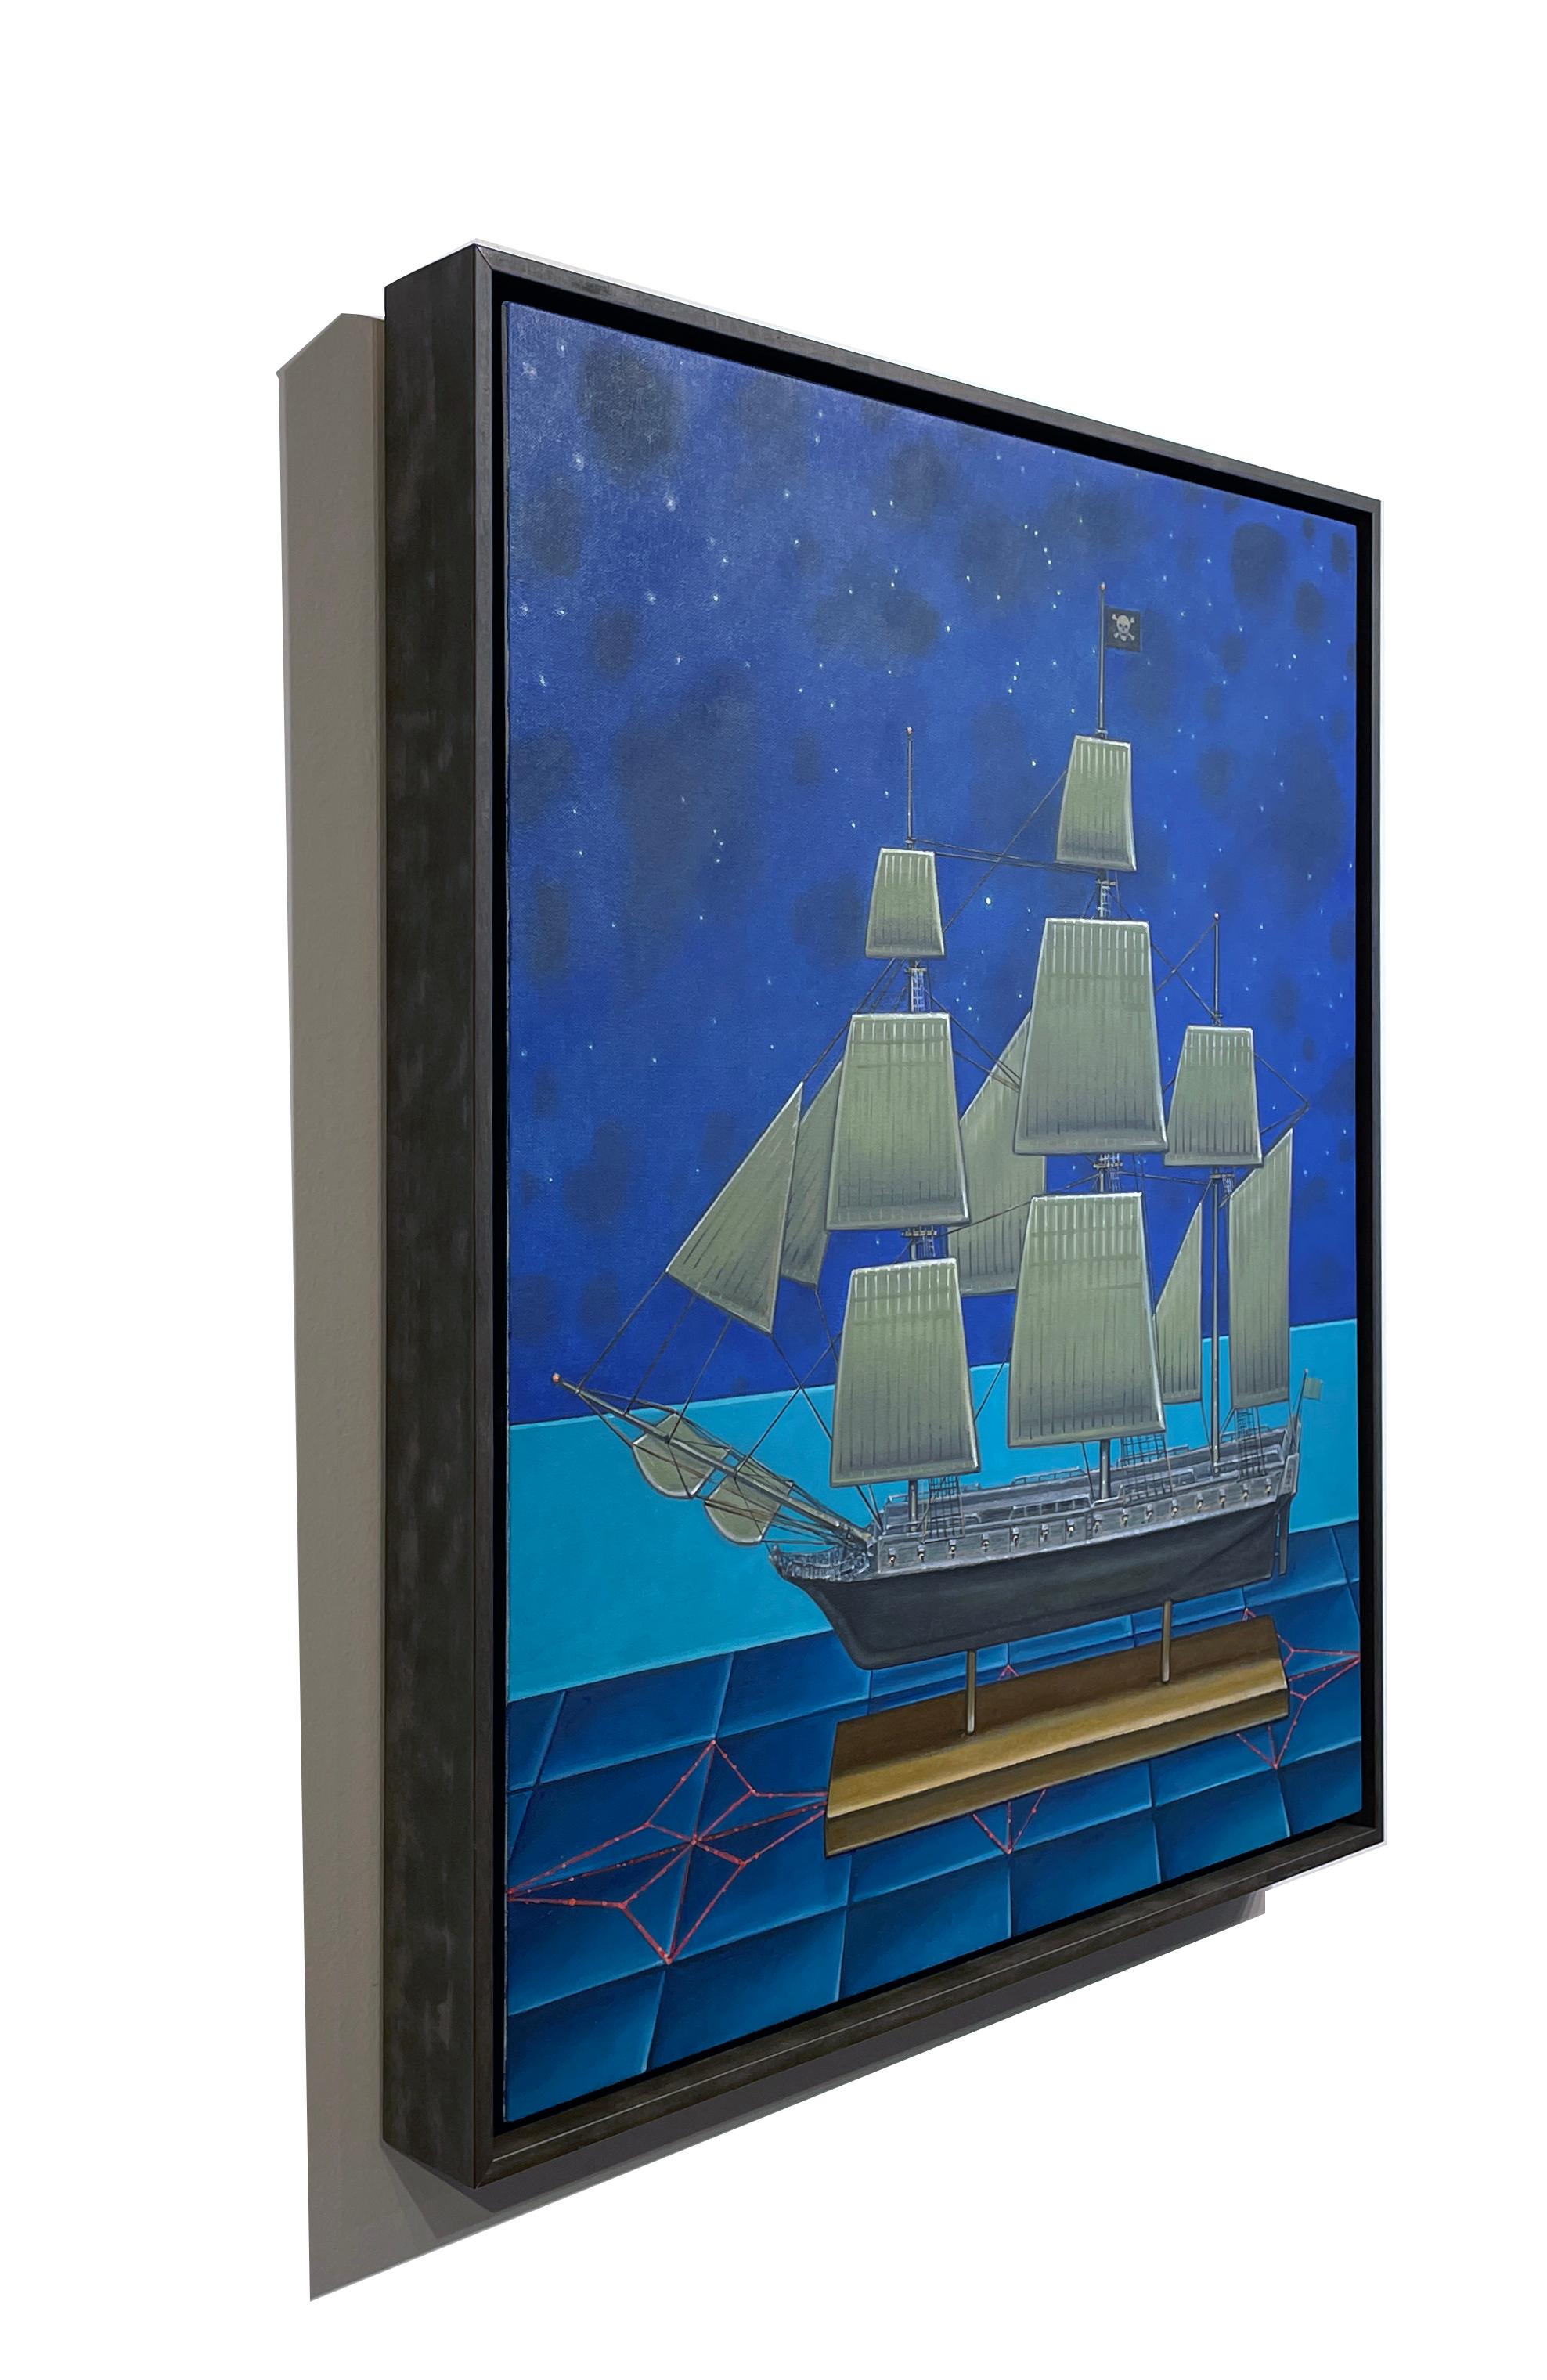 Croix de nuit -  Modèle réduit de navire de pirate et de constellations, huile sur panneau - Surréalisme Painting par John Hrehov